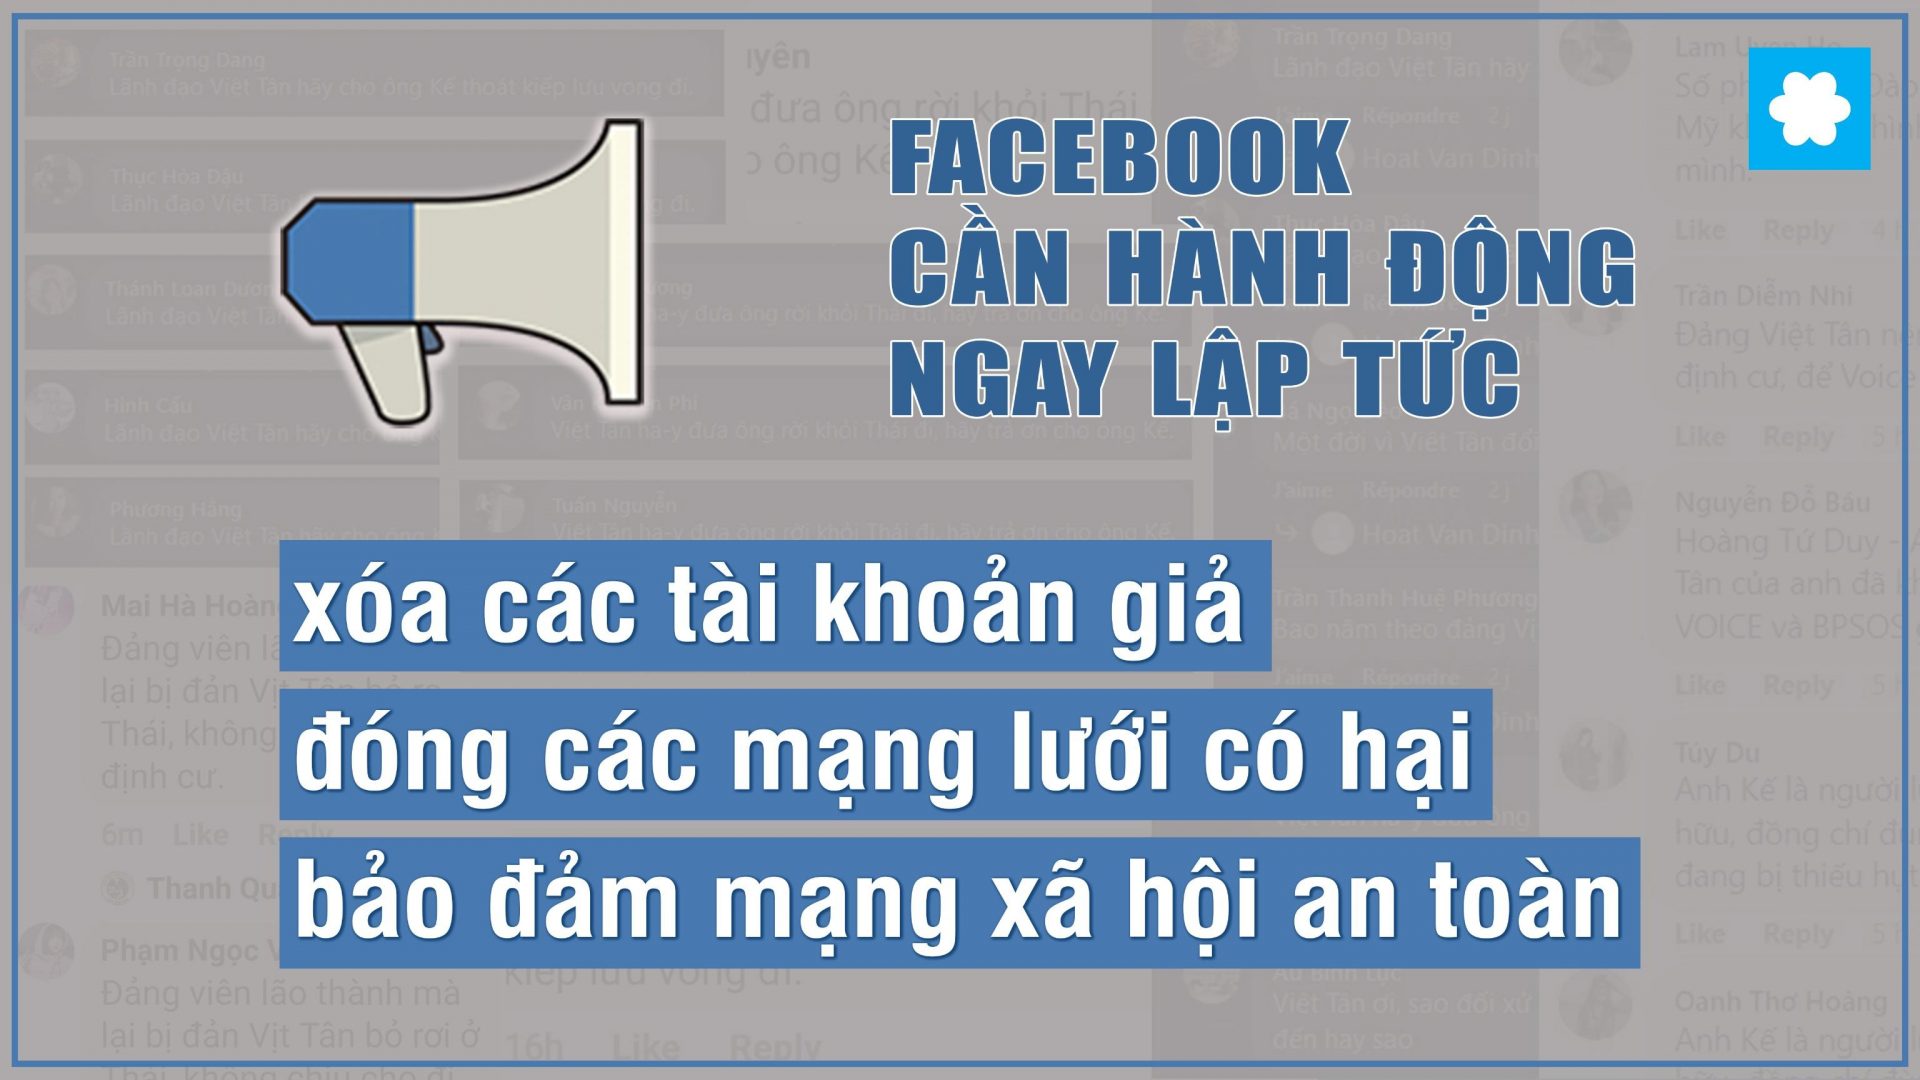 Việt Tân báo động - Mạng lưới dư luận viên tấn công xã hội dân sự Việt Nam: Facebook phải hành động. Ảnh: Việt Tân